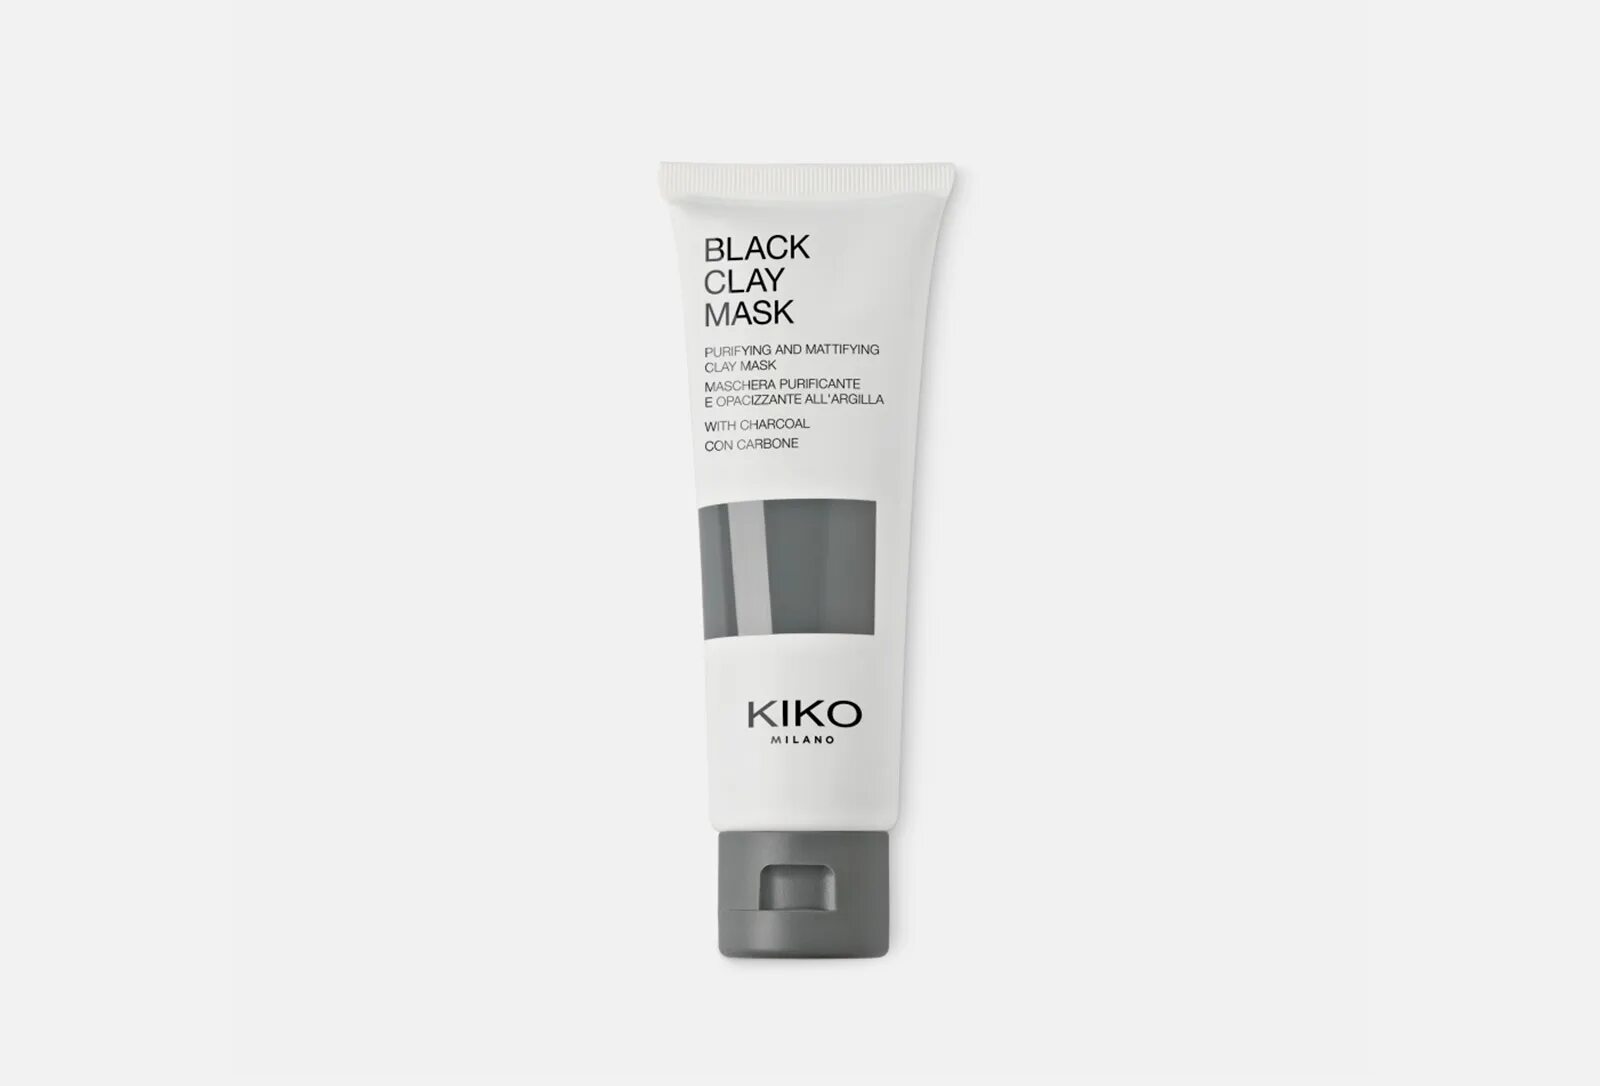 Кико Black Clay Mask.